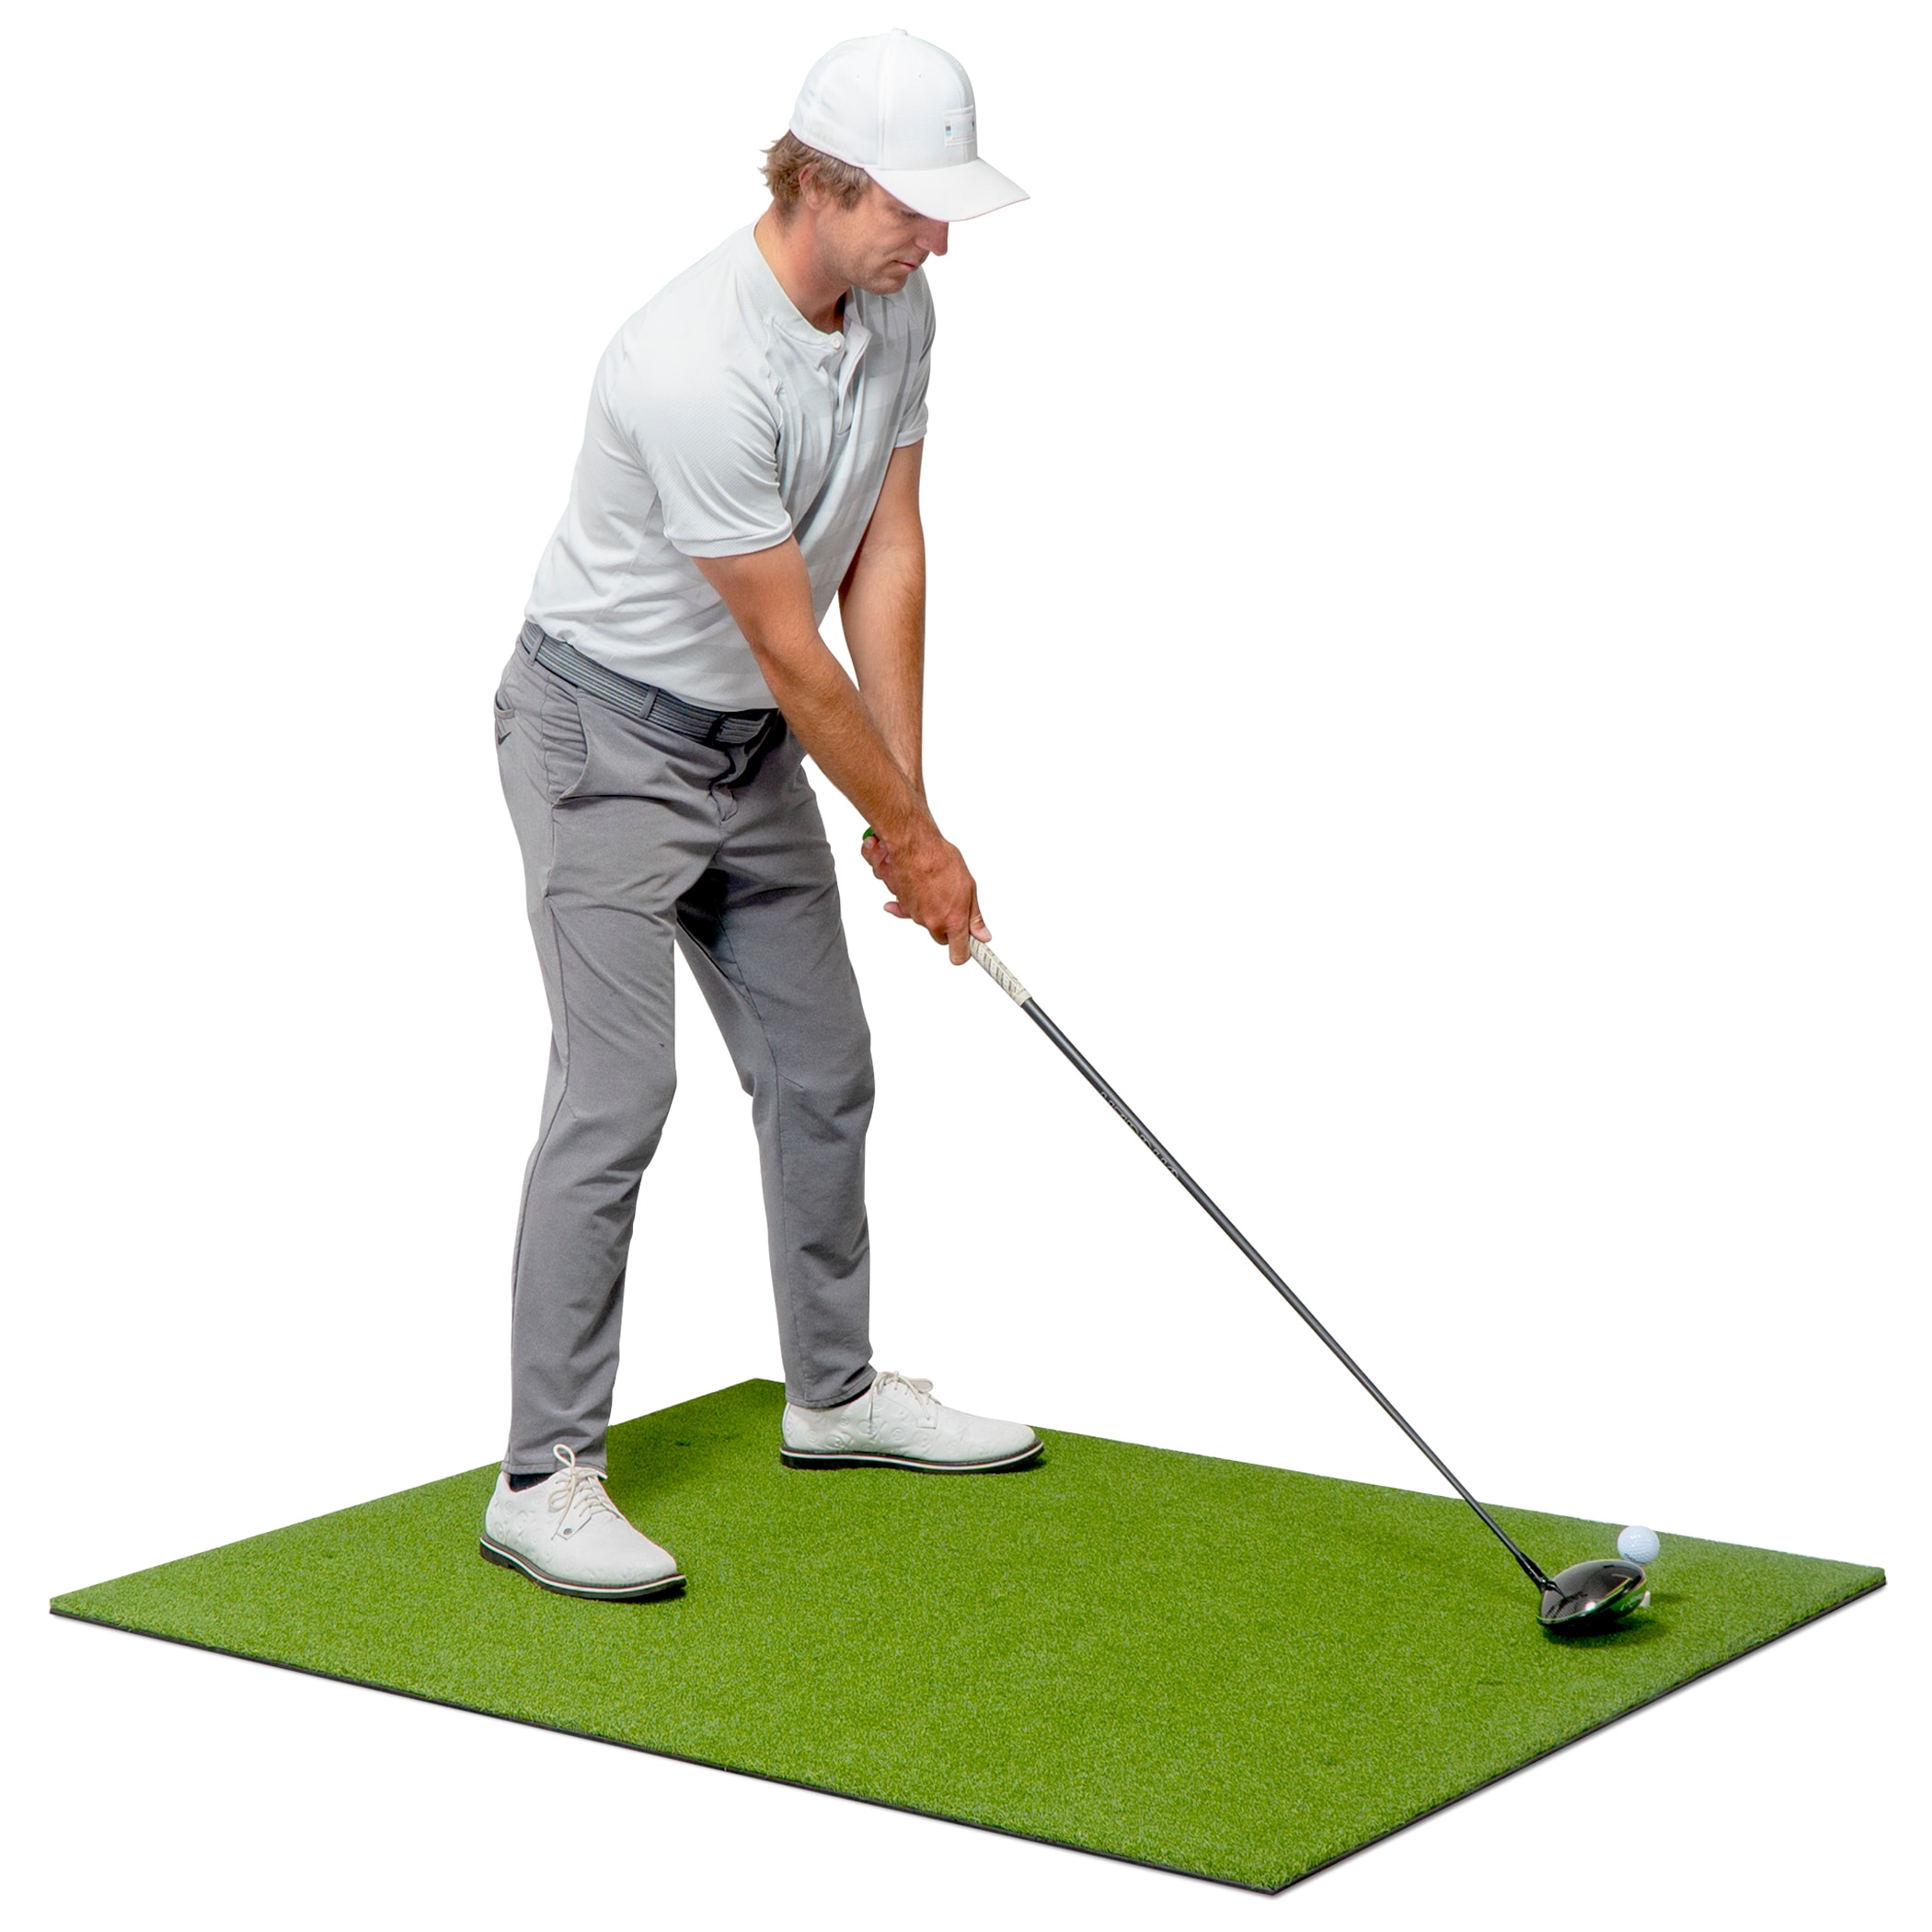 Golf simulator Golf at Lowes.com